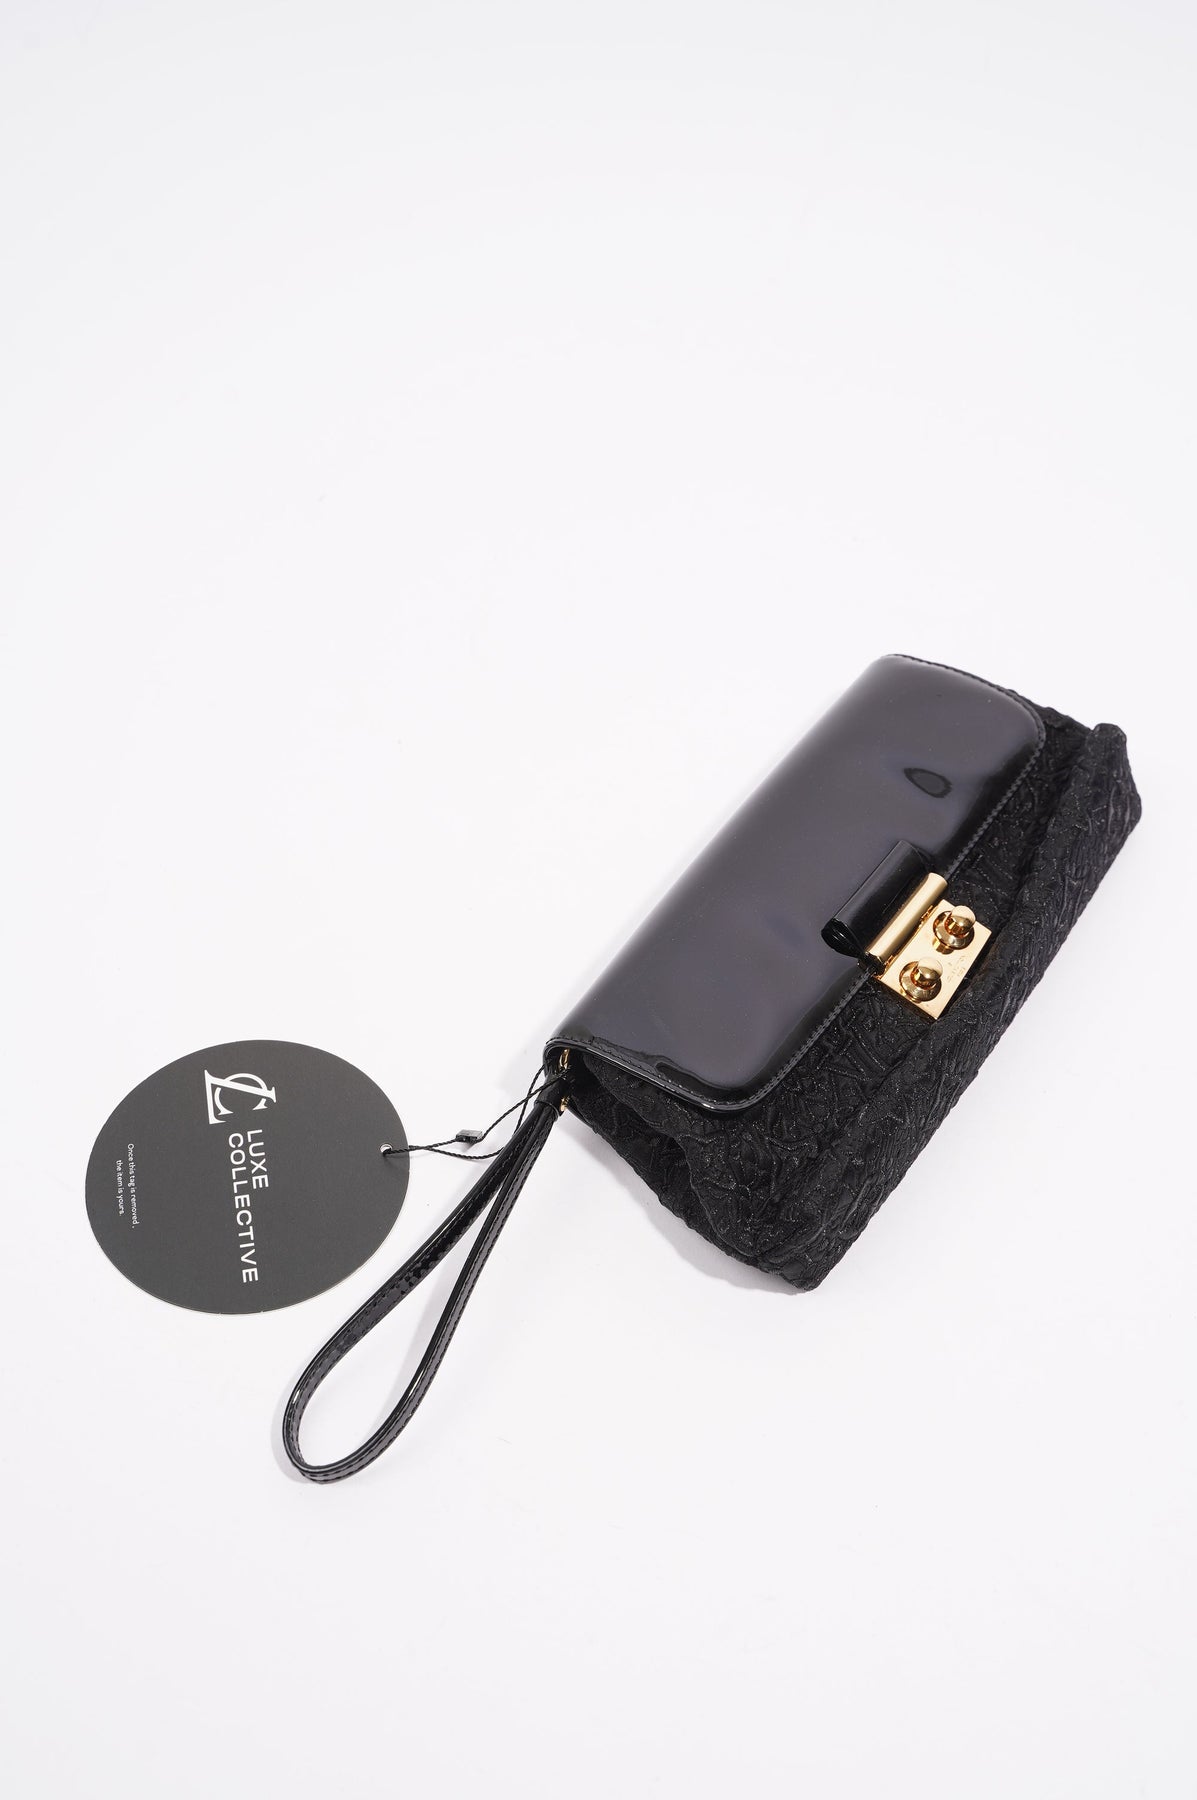 LOUIS VUITTON Slick Black Patent Leather Square Toe Cut Out Buckle Vam –  The Paper Bag Princess Vintage